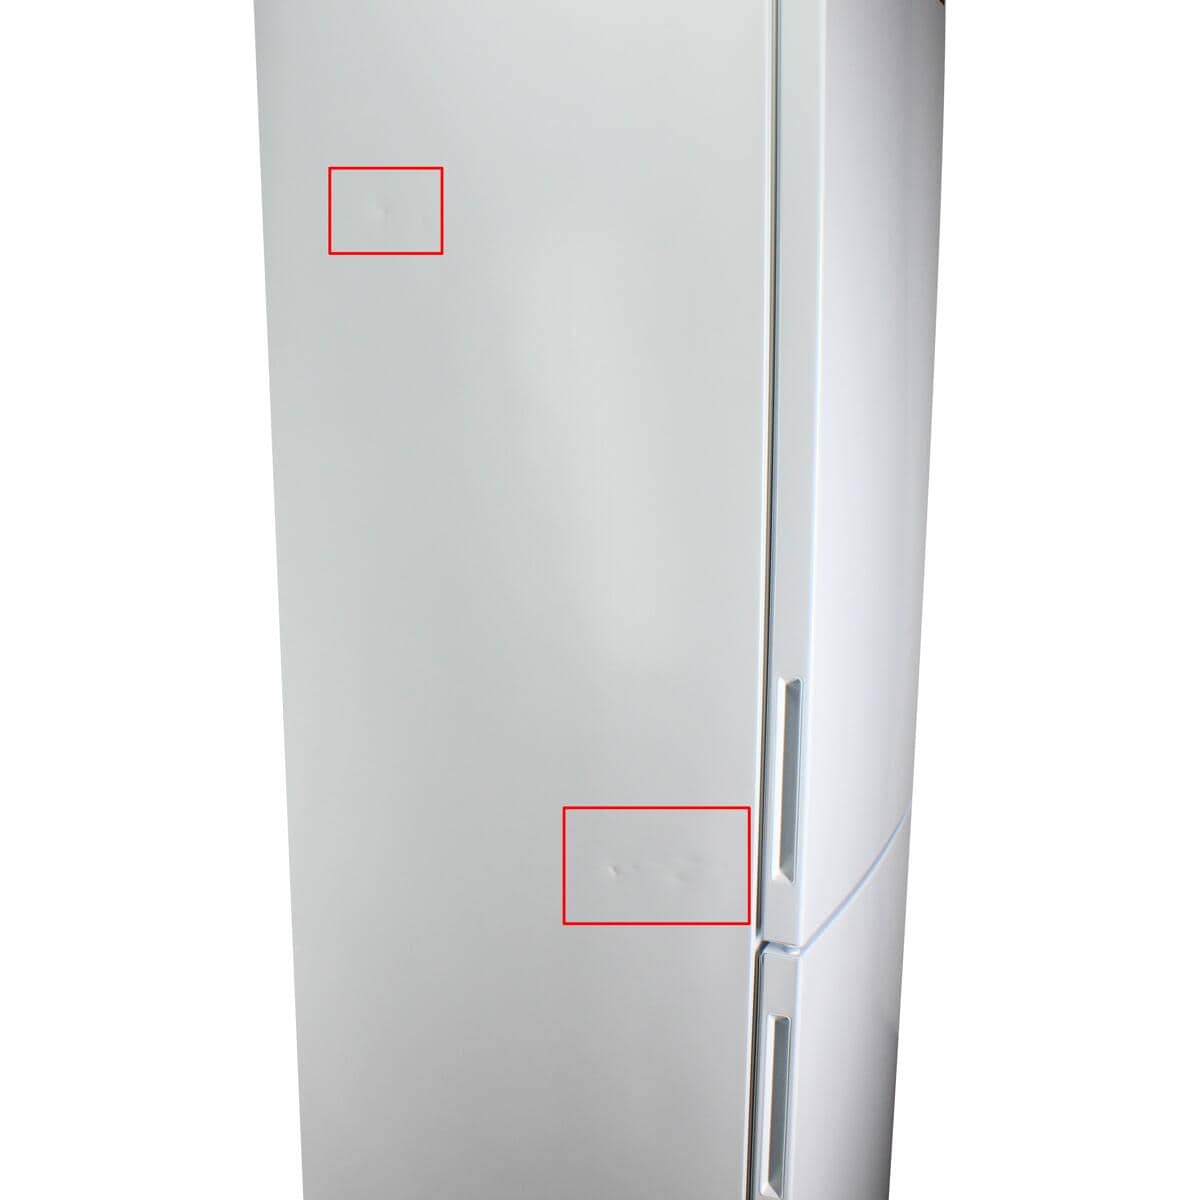 LG GBP62SWNAC Stand-Kühl-Gefrierkombination 59,5cm breit 384 Liter  Frostfrei Nullzone LED Beleuchtung Multi-Airflow weiß